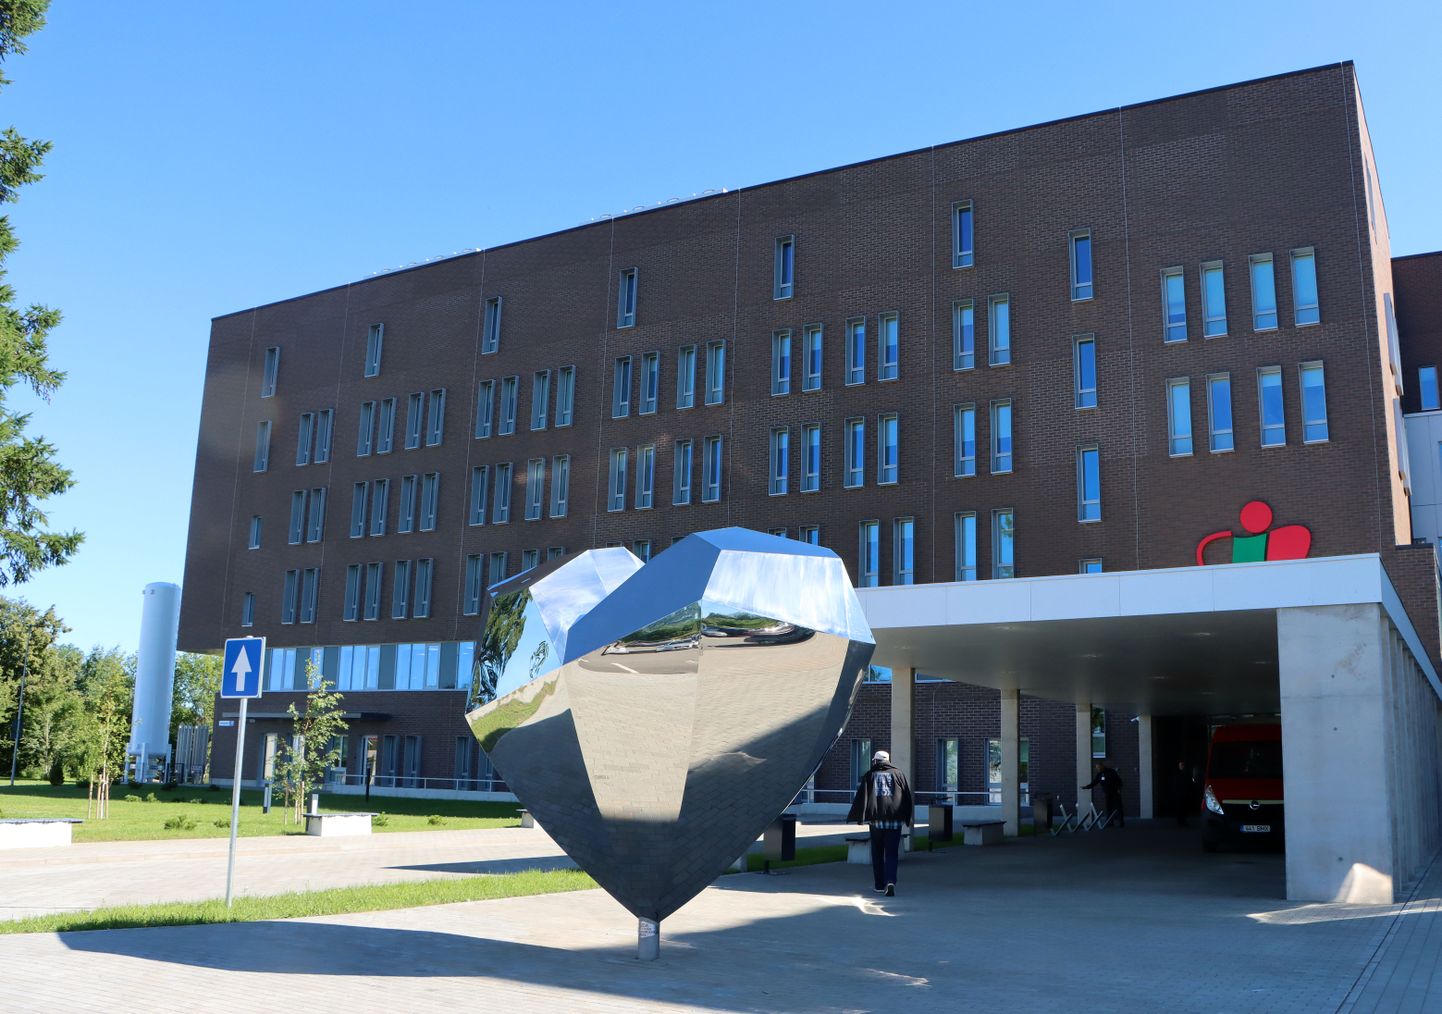 Перед новым корпусом Ида-Вируской центральной больницы установлено большое сердце из металла, имеющее форму логотипа больницы.